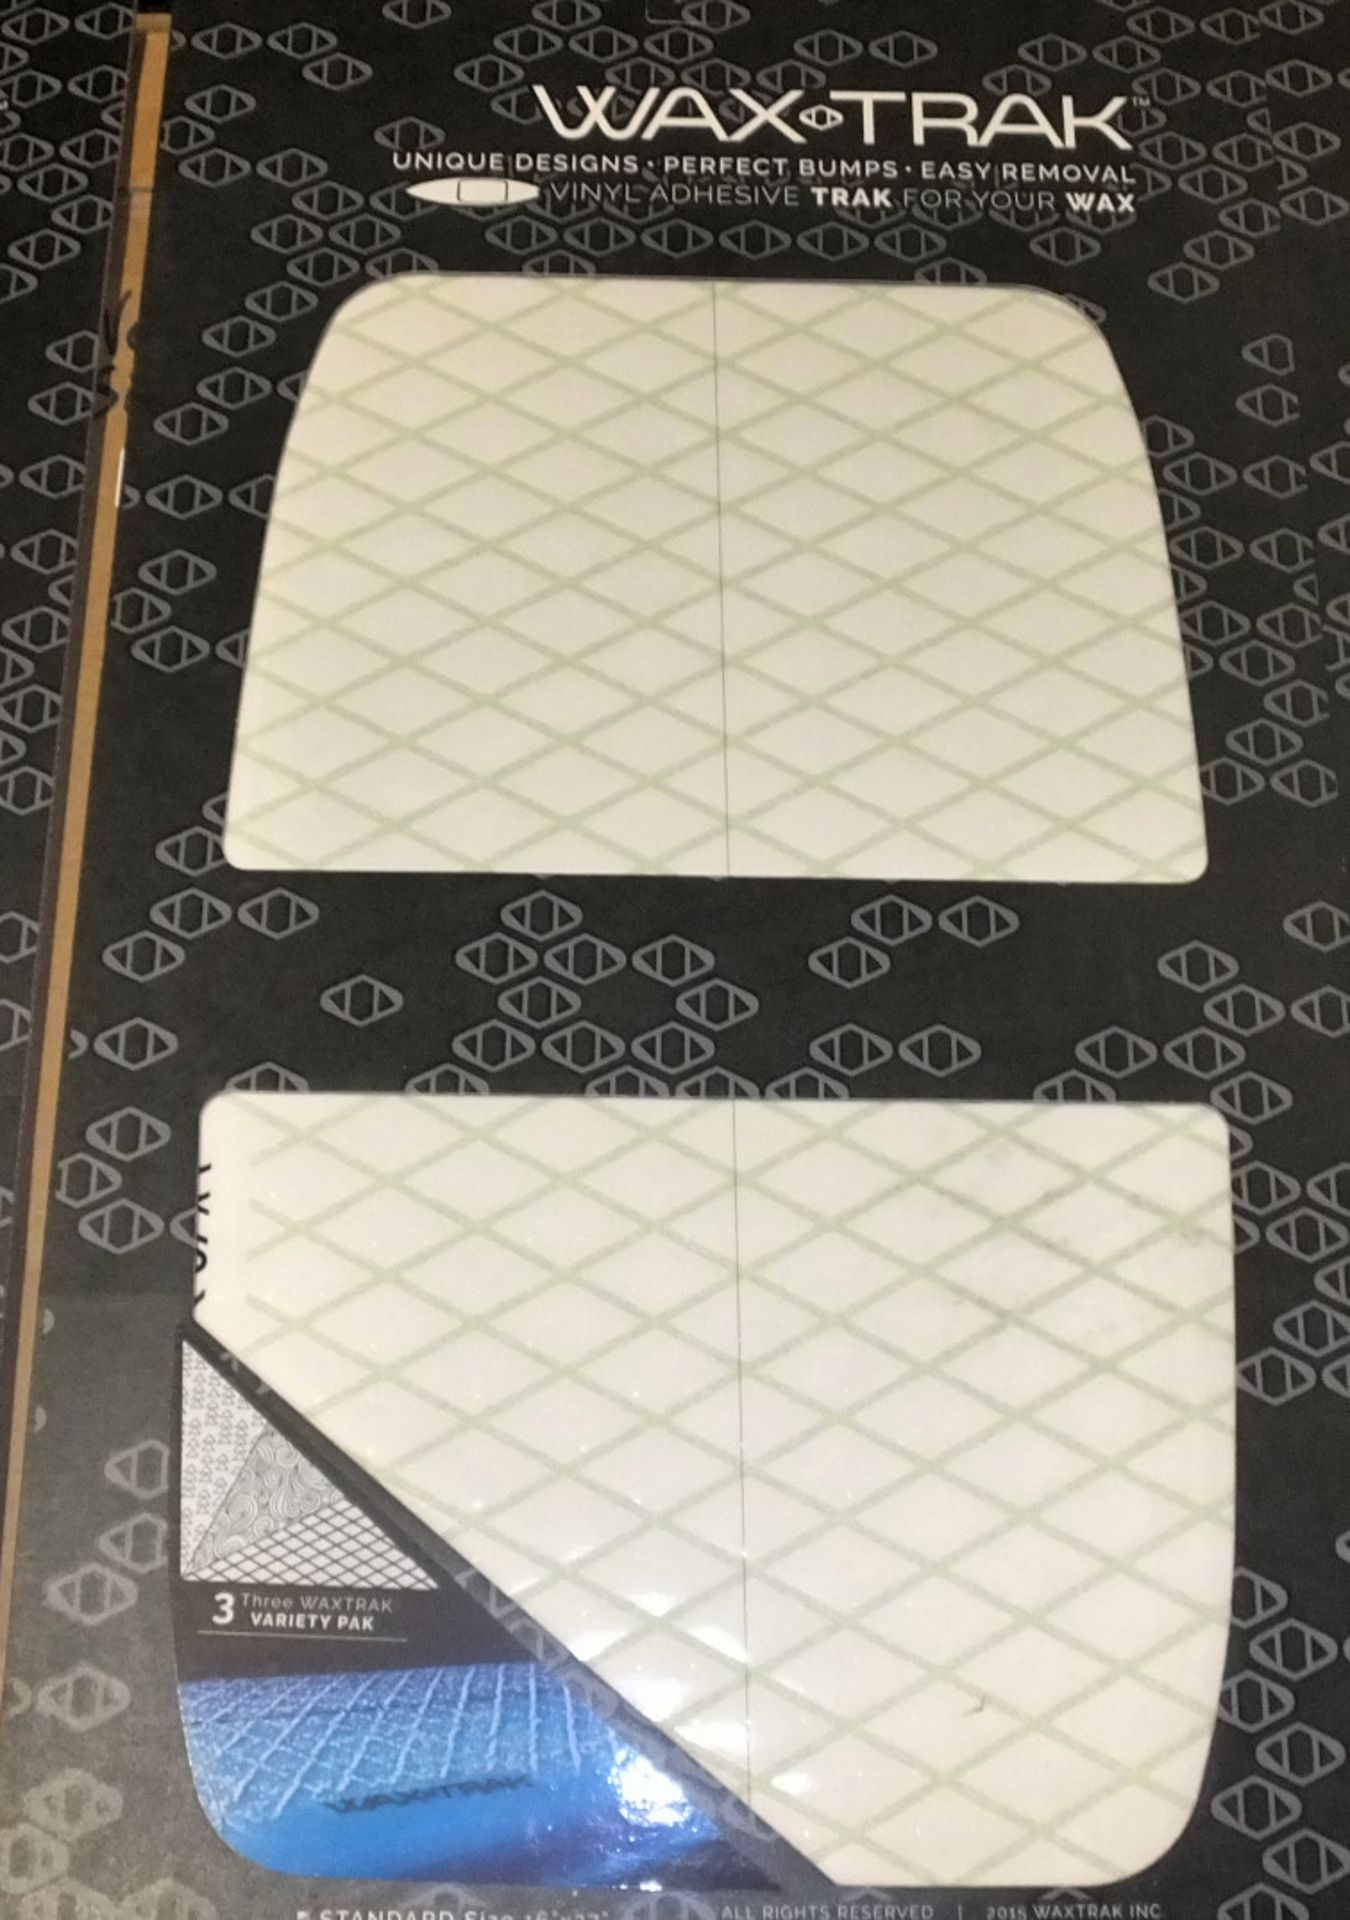 3x Packs of Wax Trak Vinyl Adhesive Sheets - 3 Sheets per pack - Image 3 of 3